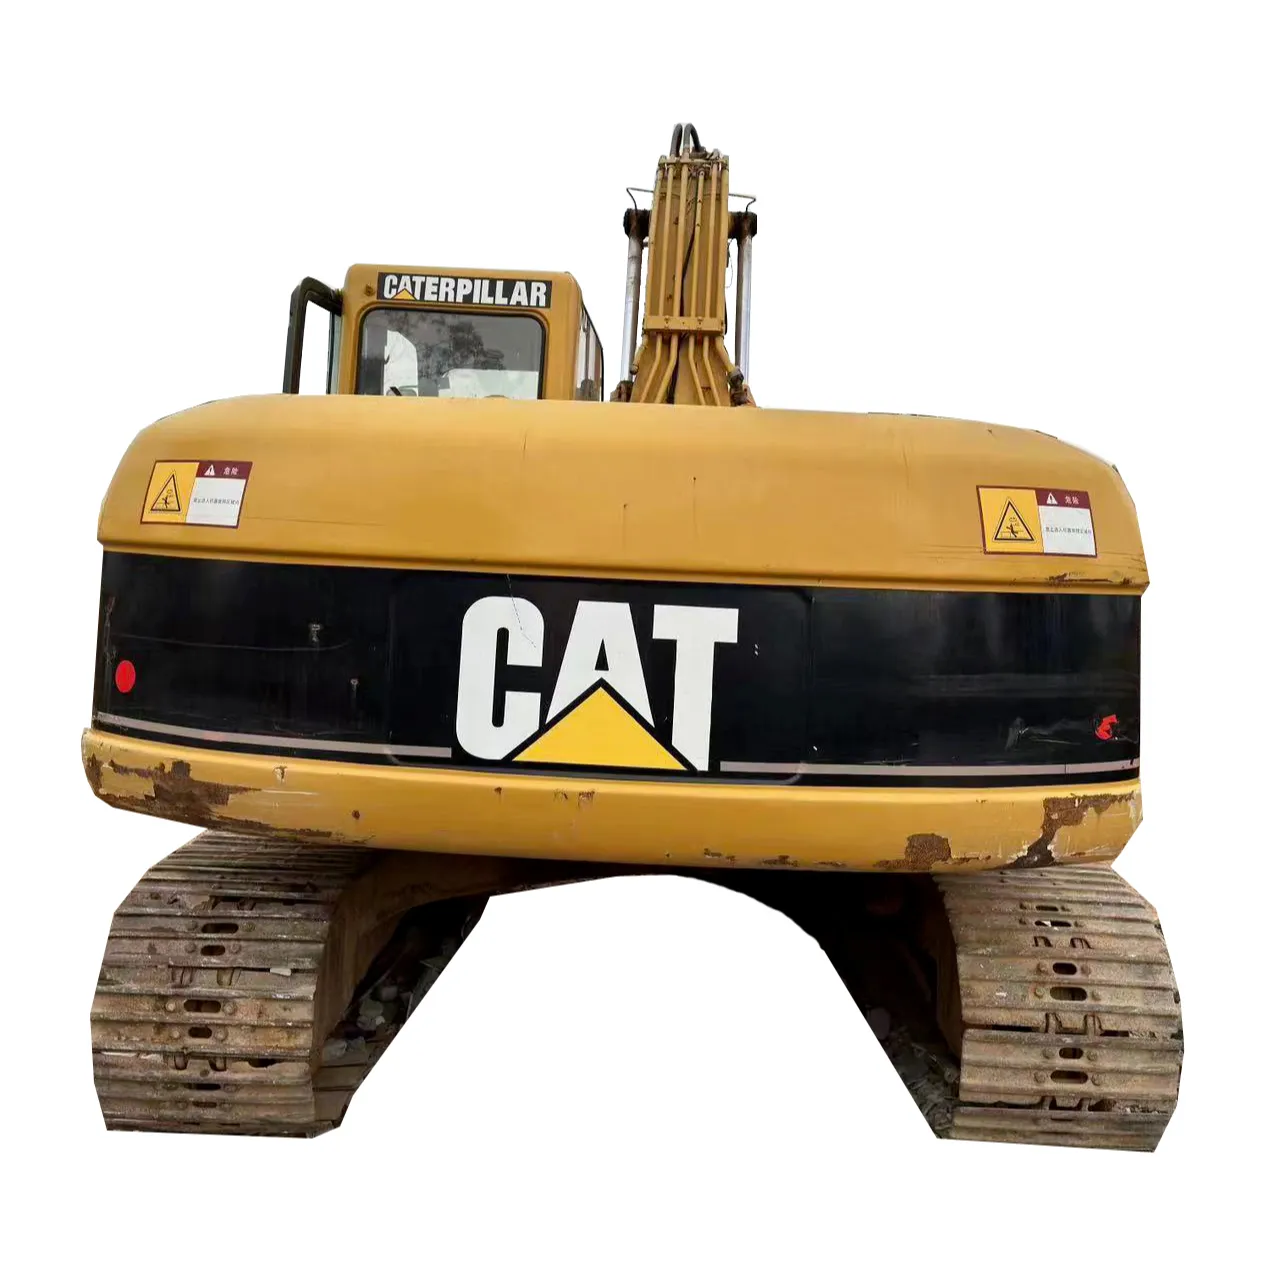 Escavadeira de esteira hidráulica Caterpillar CAT 320C usada barata, escavadeira CAT usada para construção civil, usada para venda